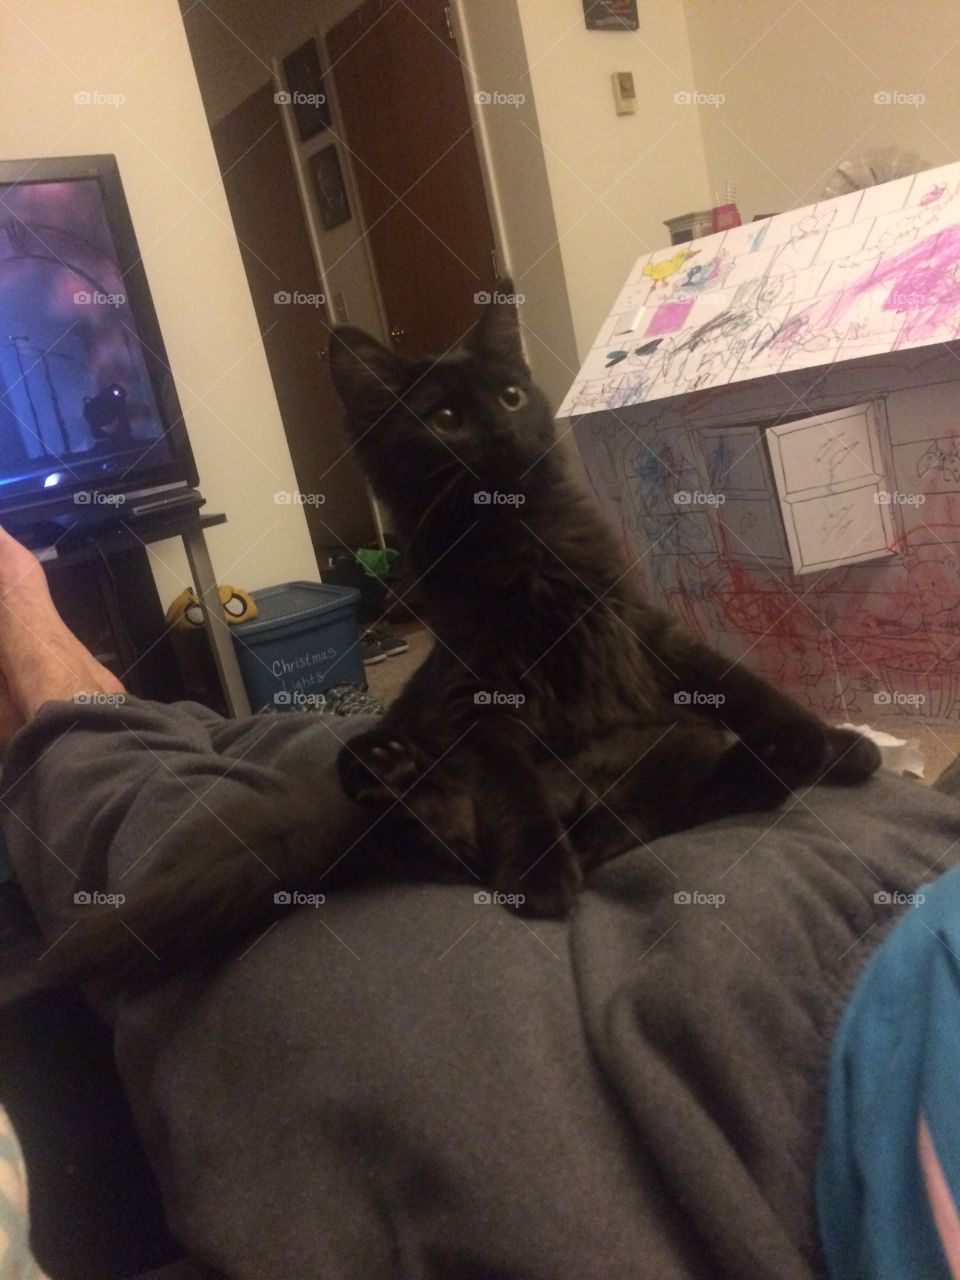 Kitten sitting on guys lap